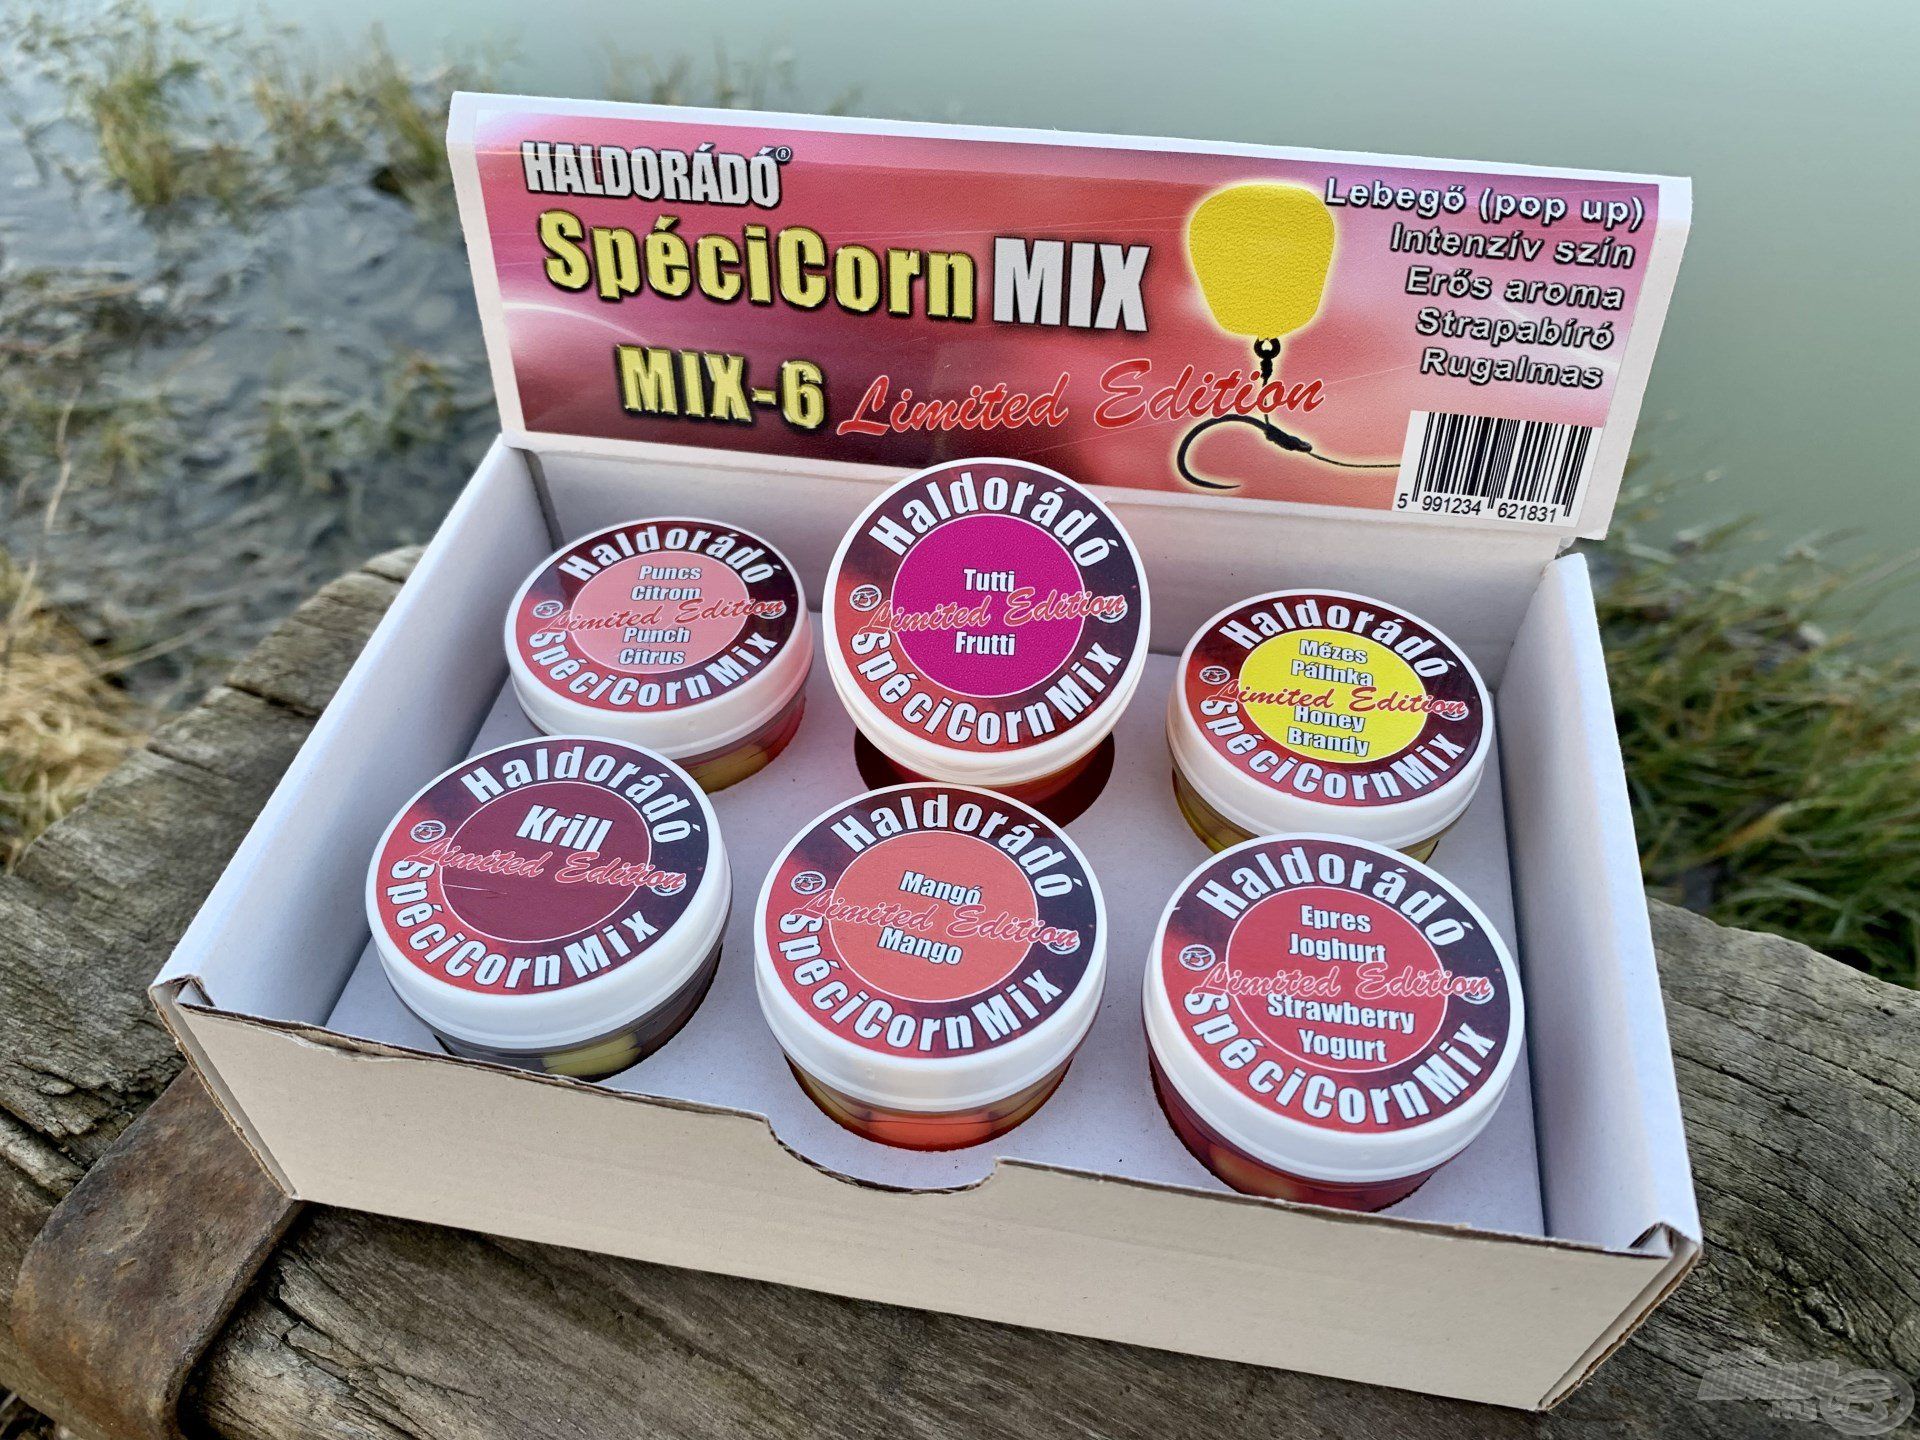 SpéciCorn Mix Limited Edition gumikukoricákkal csaliztam, amelyek közül a legfogósabb a Tutti Frutti ízű változat volt